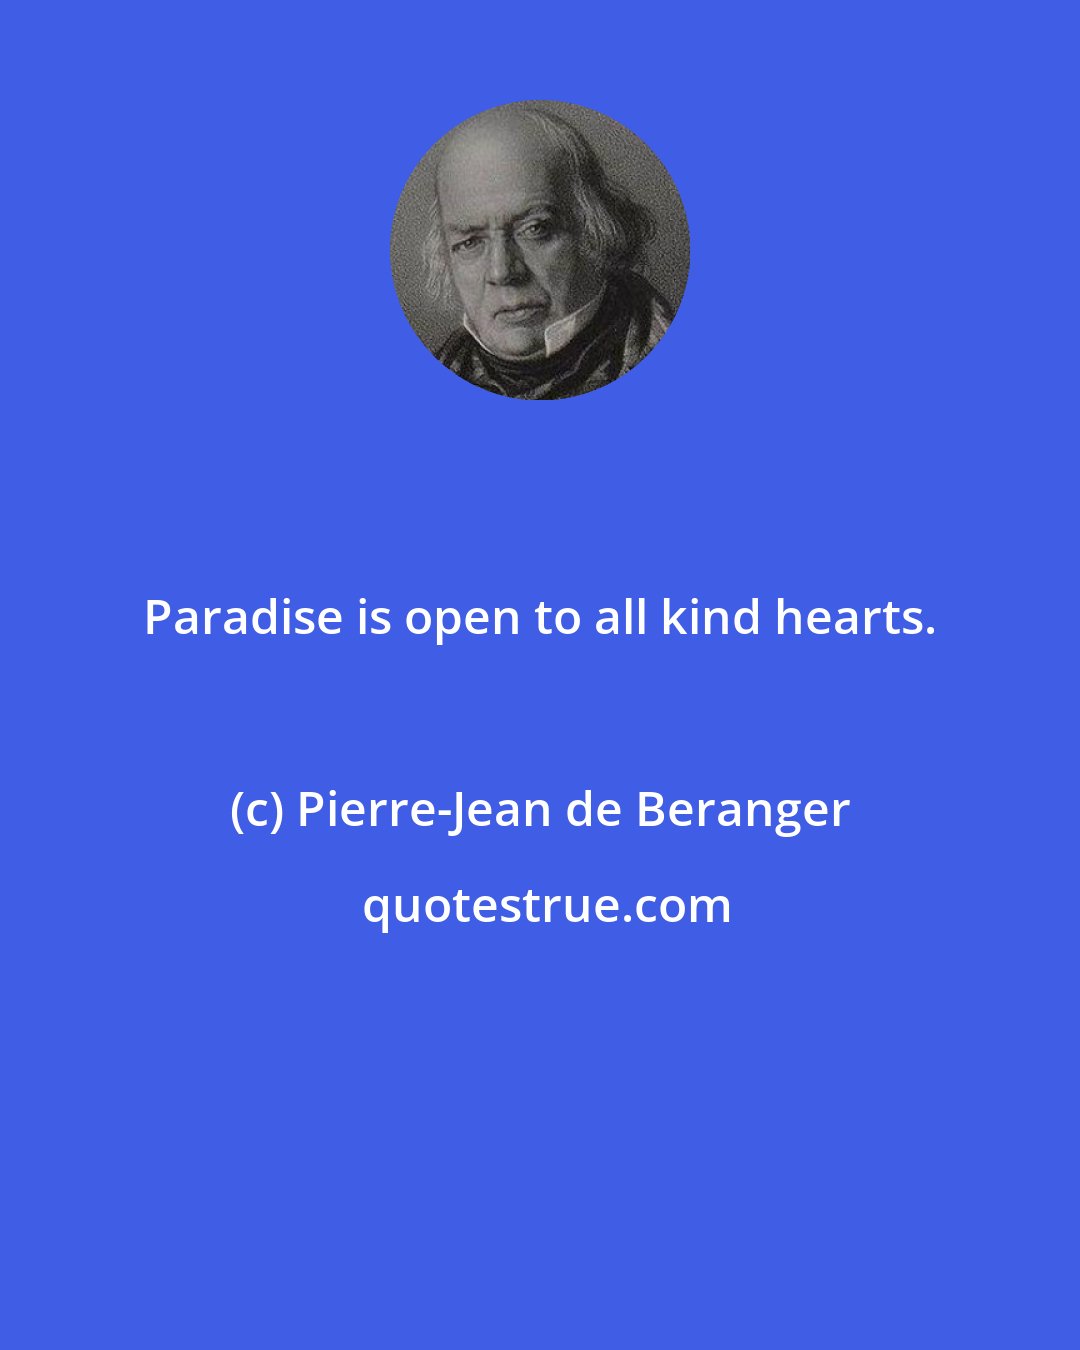 Pierre-Jean de Beranger: Paradise is open to all kind hearts.